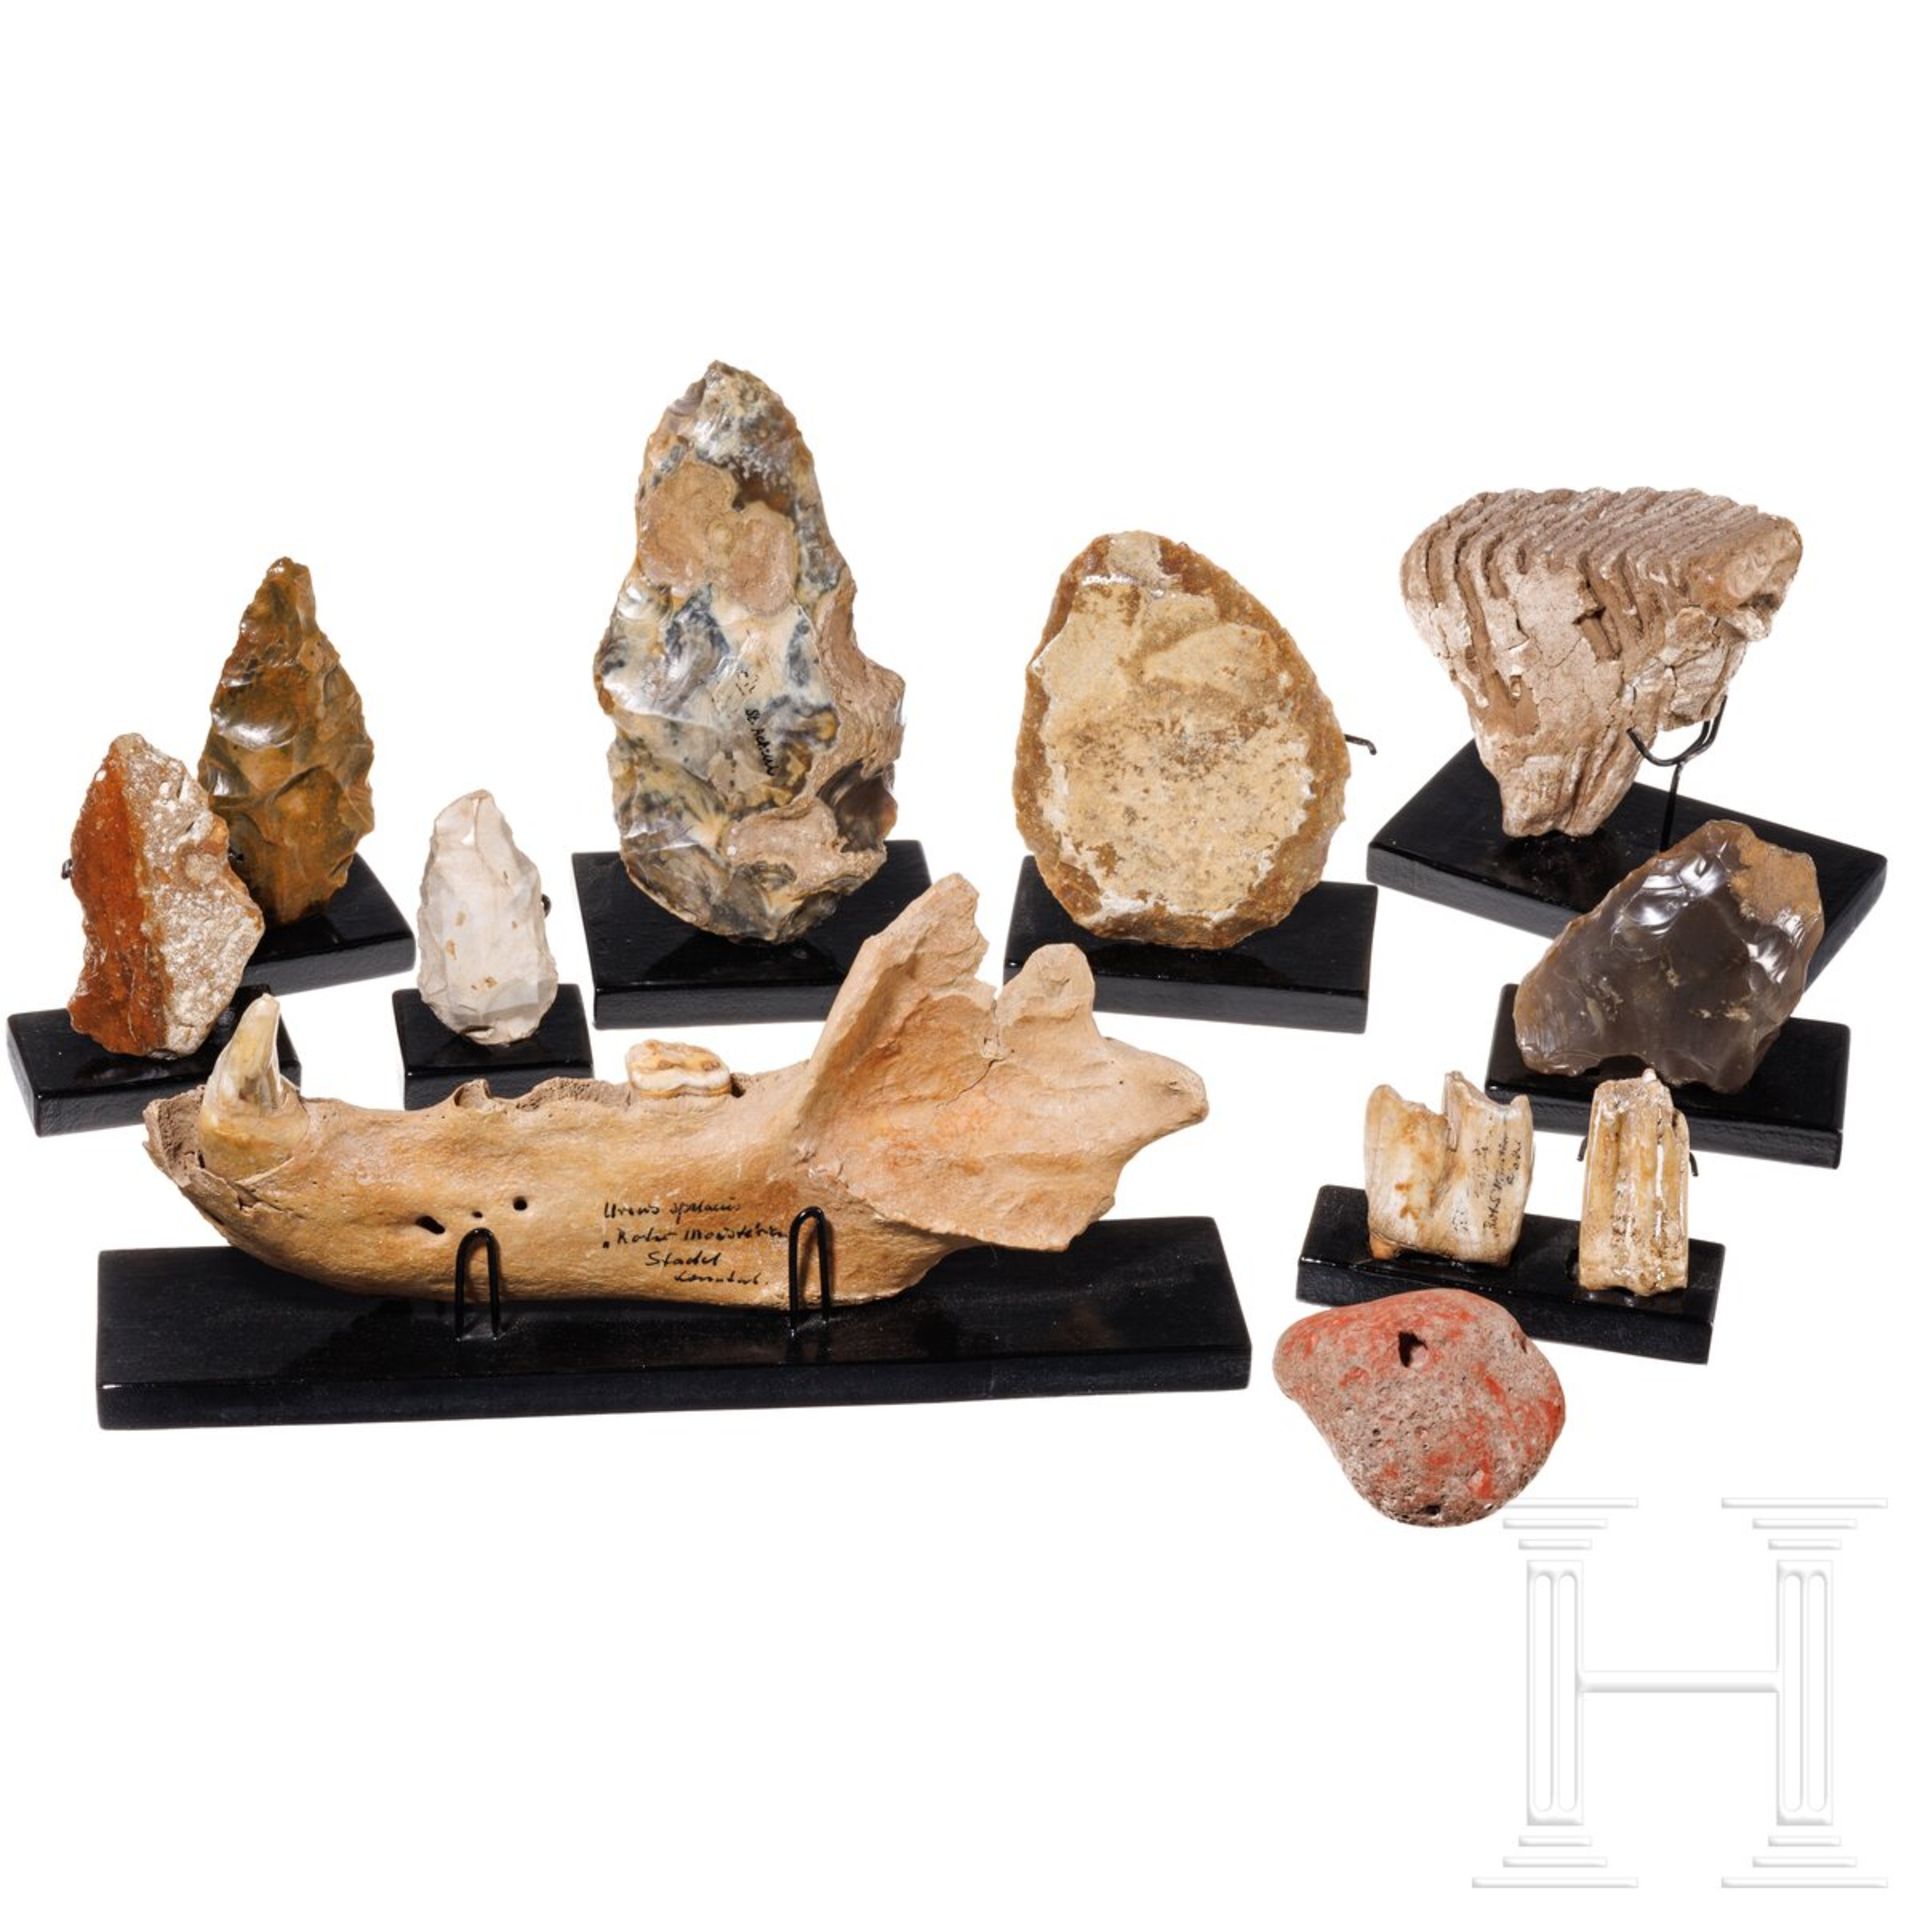 Sechs altsteinzeitliche Werkzeuge, ein Rötelstein und vier paläontologische Zahnfunde, 500.000 - 500